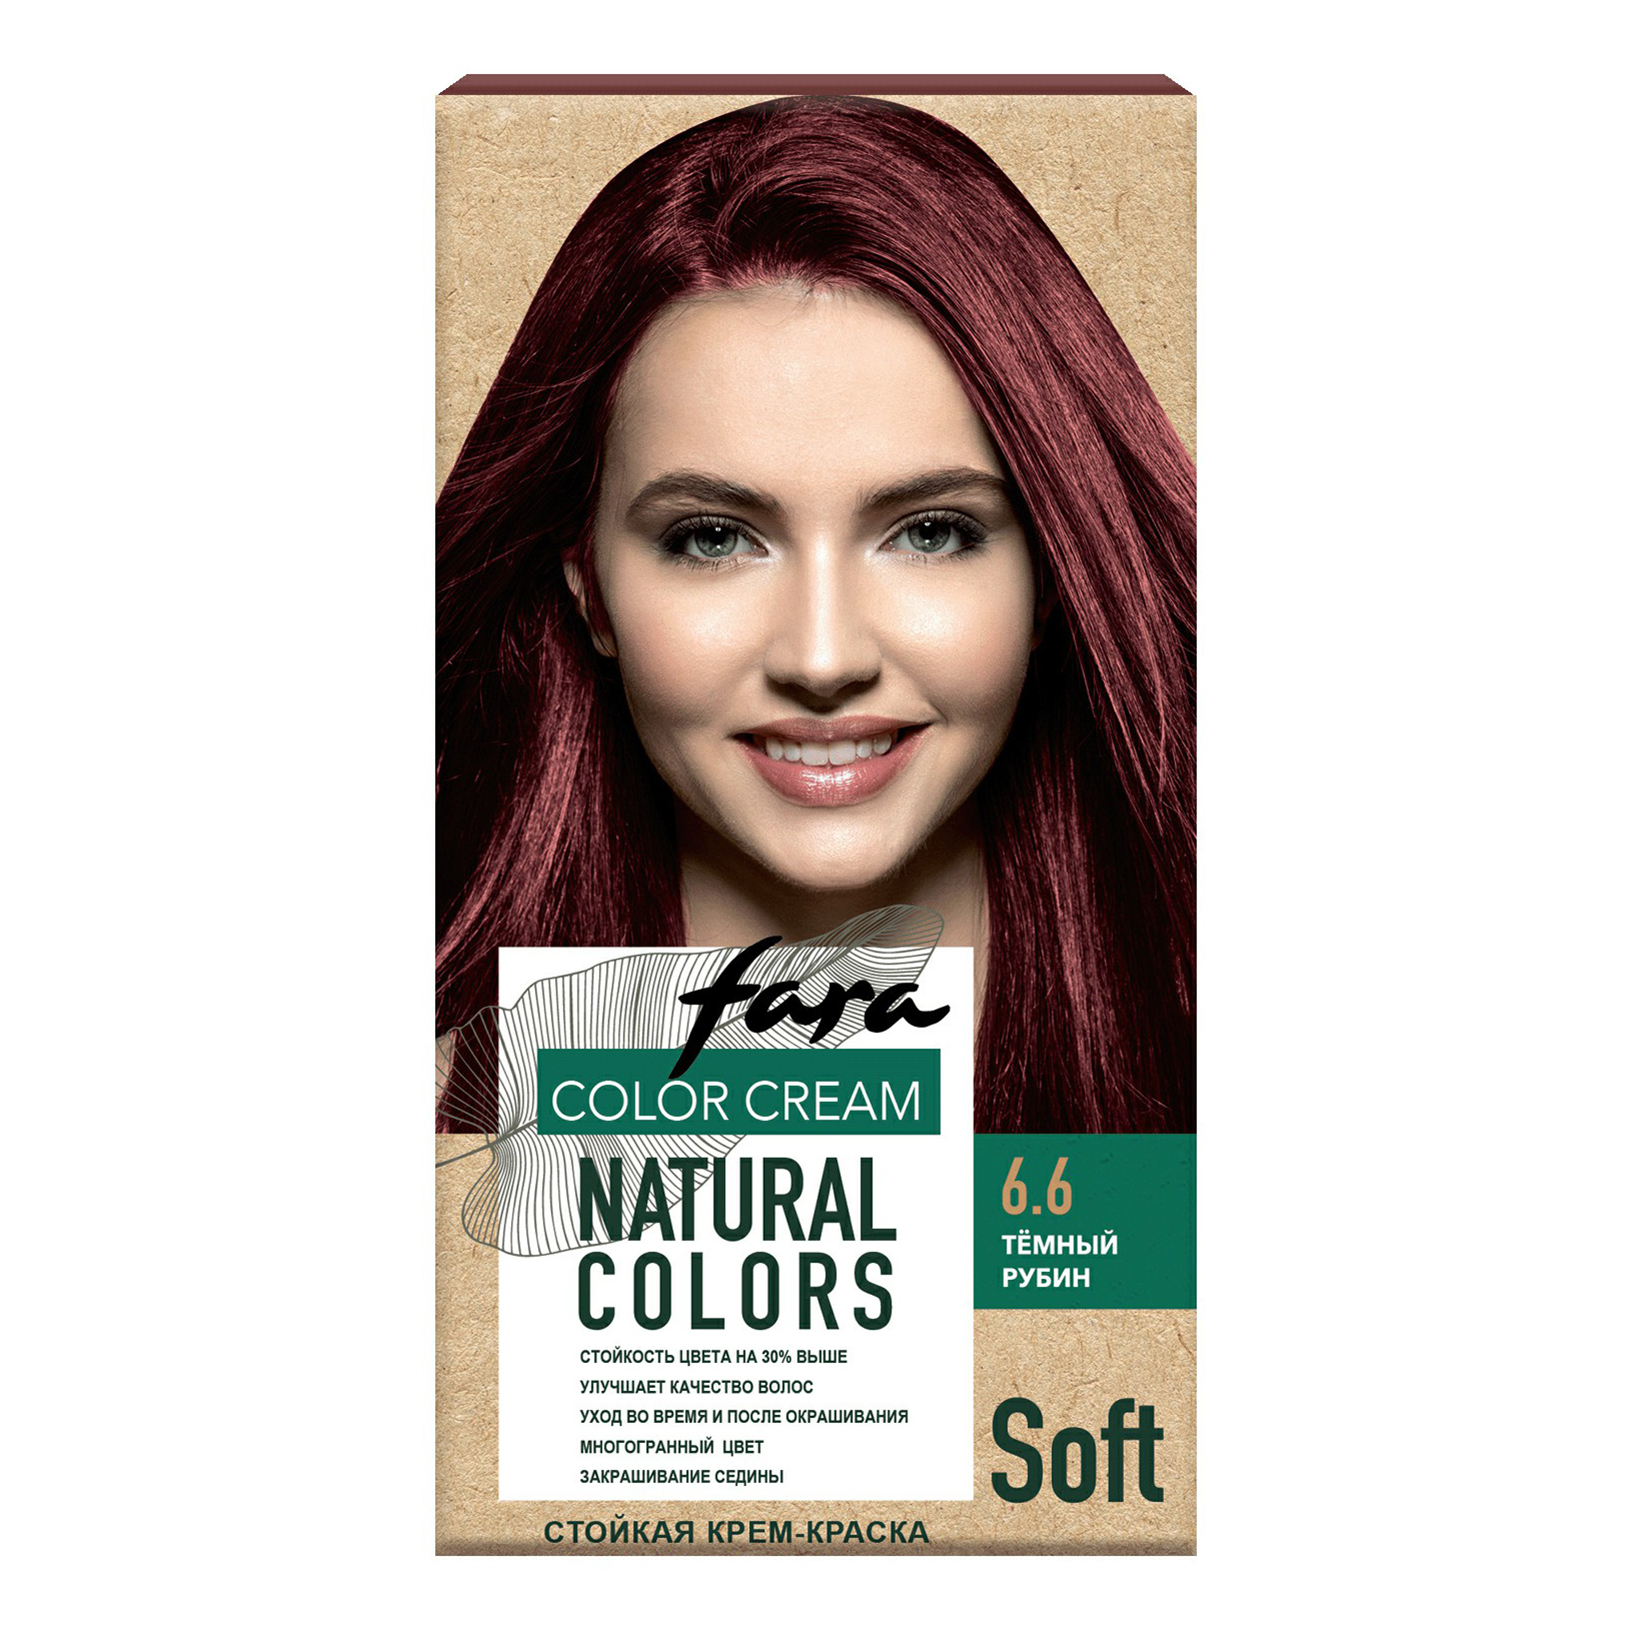 Крем-краска для волос Fara Natural Colors Soft 324 Темный рубин 150 мл стойкая кератиновая крем краска cot 6 1 темный блондин пепельный 90 мл